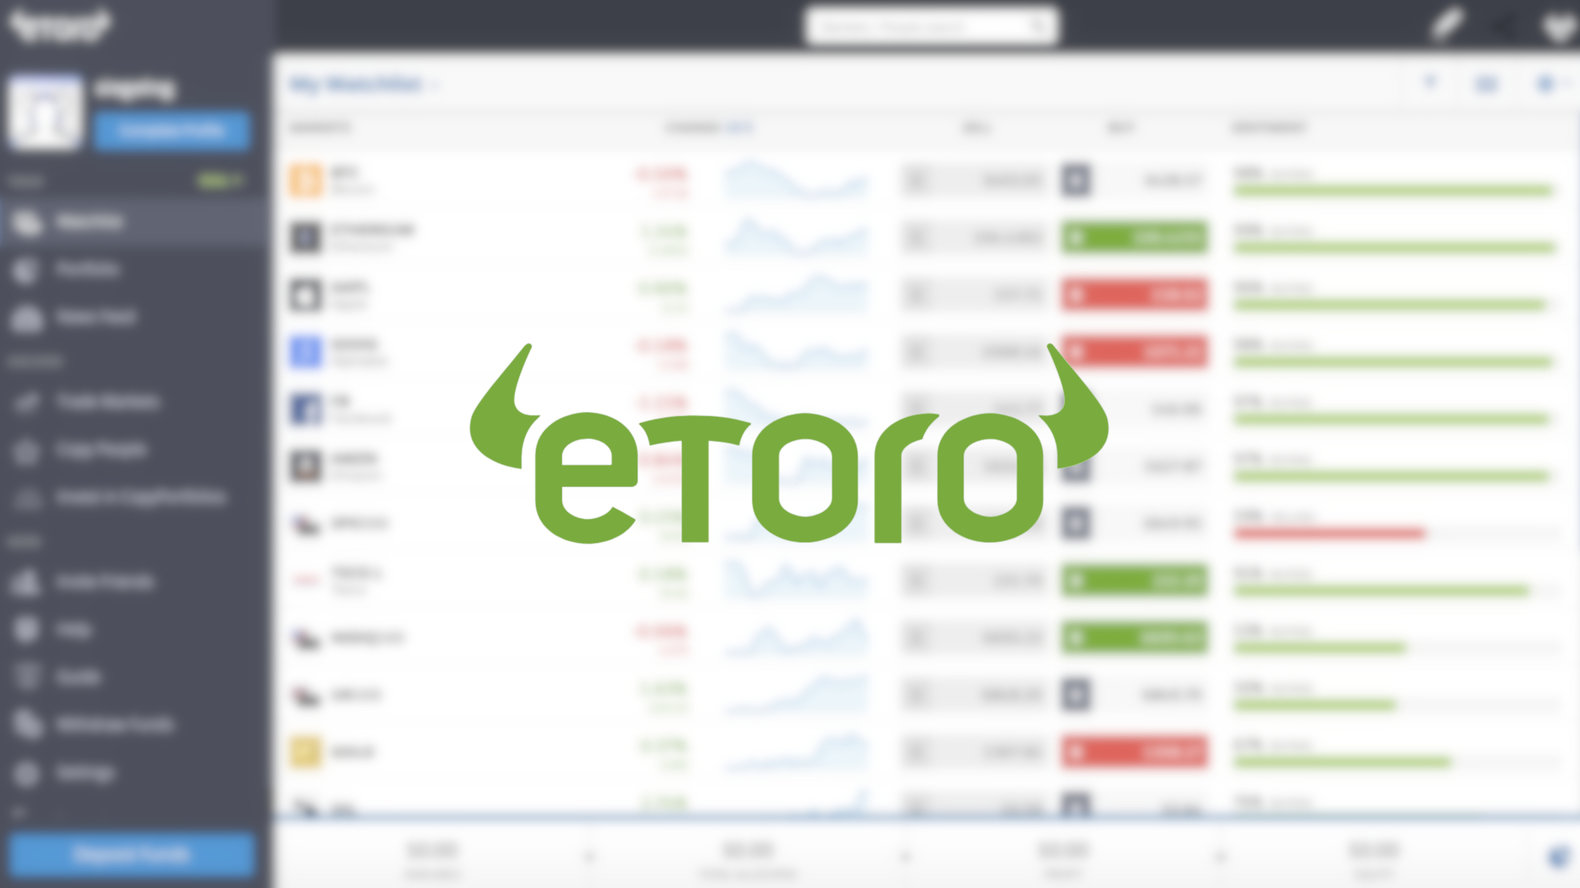 etoro-exchange